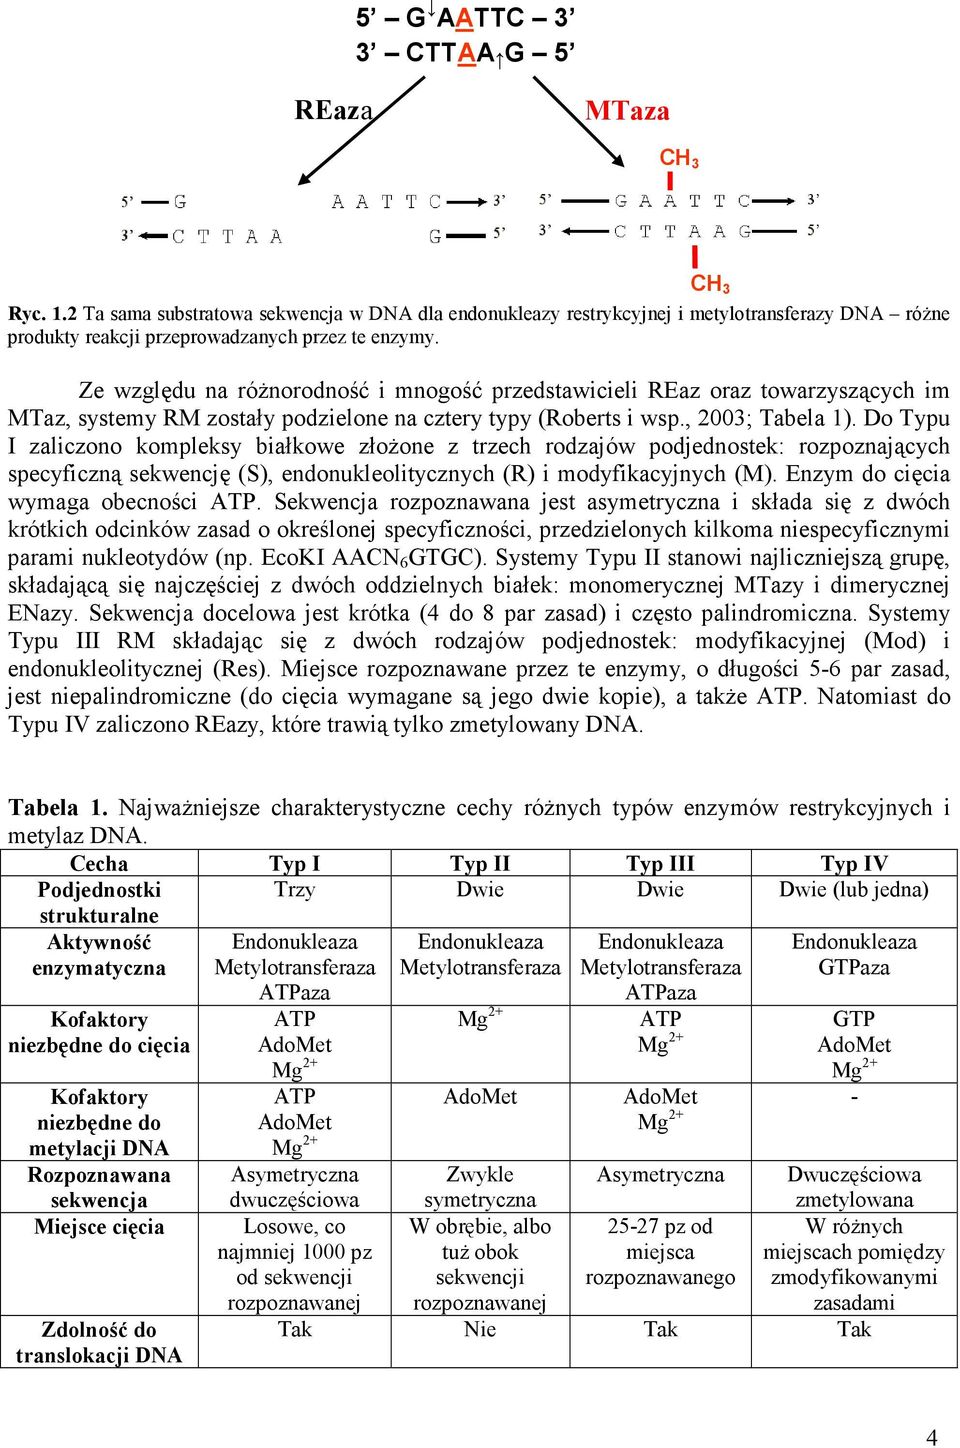 Ze względu na róŝnorodność i mnogość przedstawicieli REaz oraz towarzyszących im MTaz, systemy RM zostały podzielone na cztery typy (Roberts i wsp., 2003; Tabela 1).